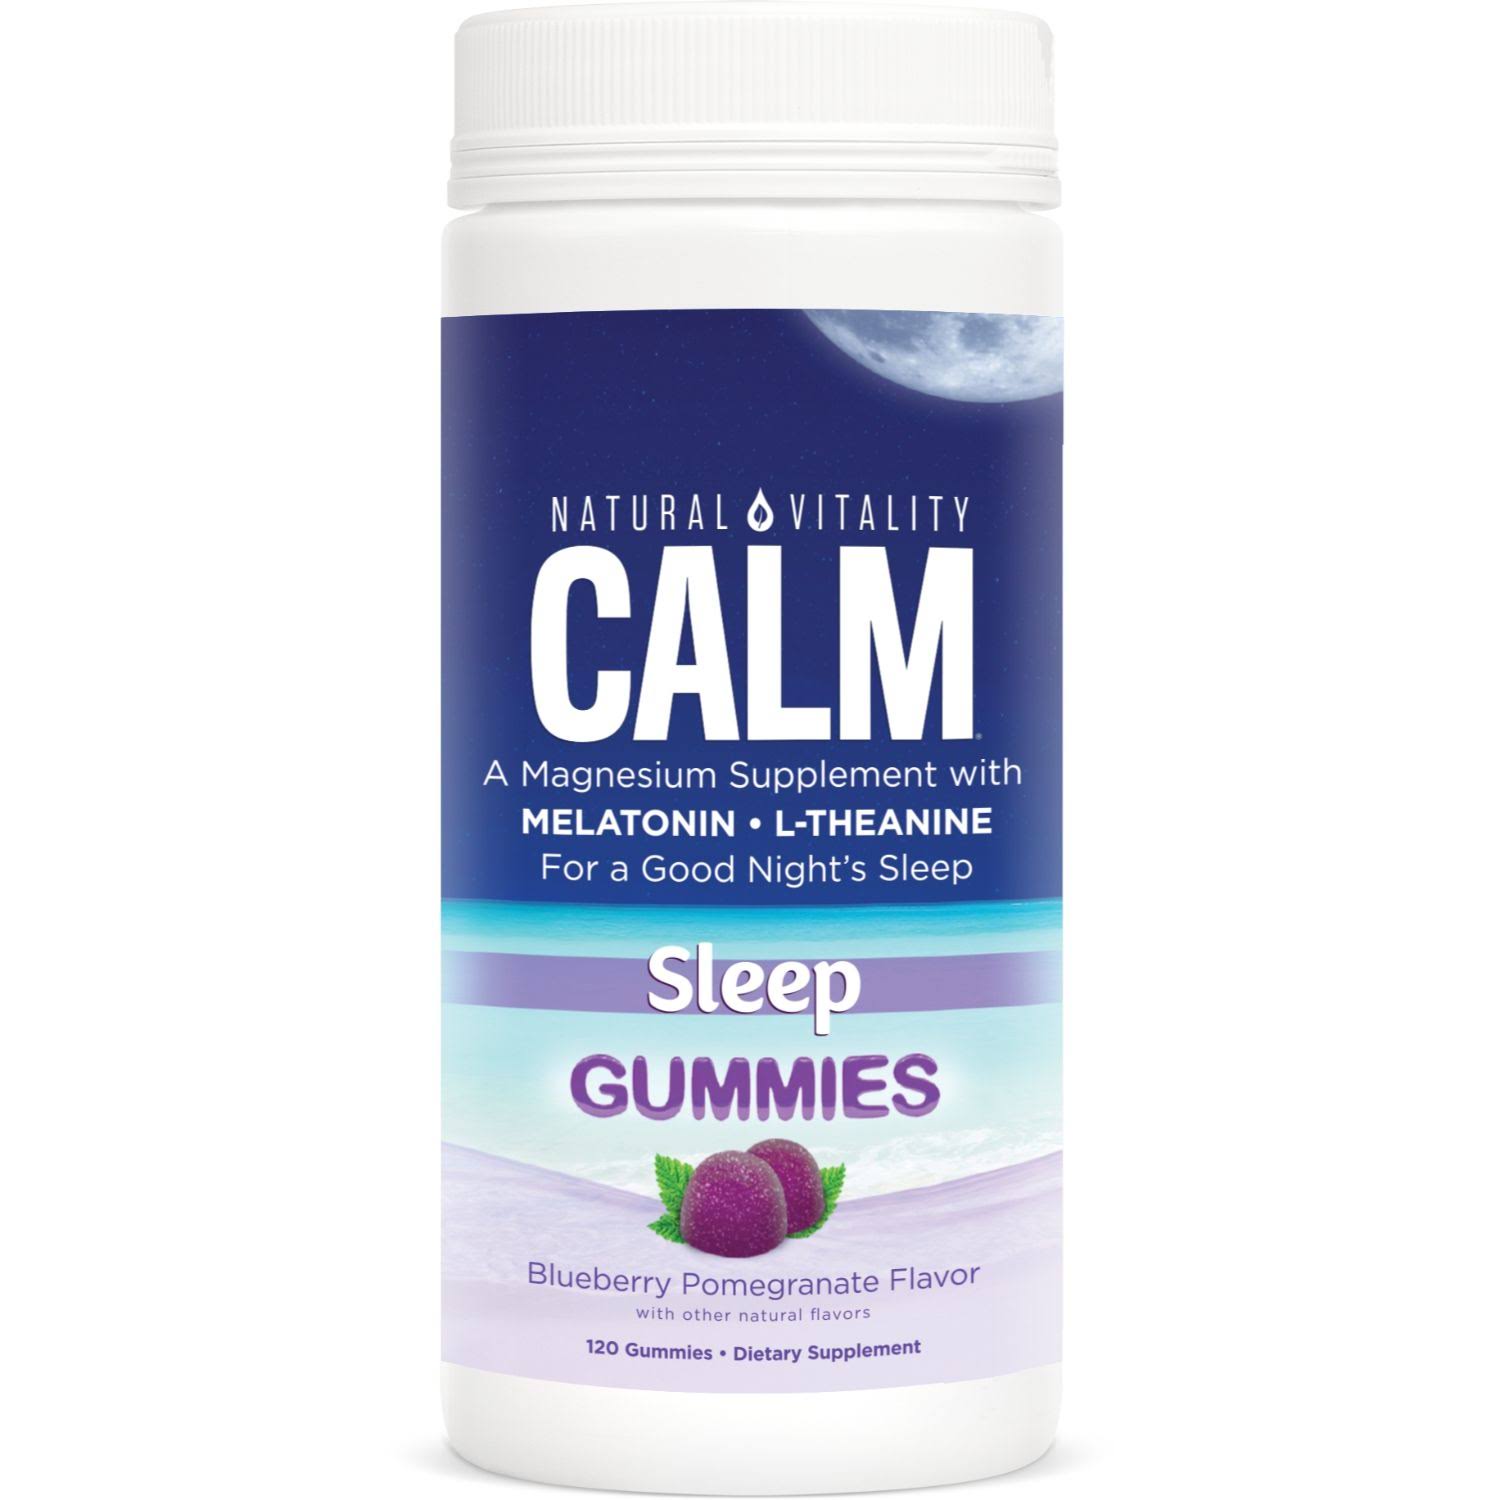 Natural Vitality Calm Sleep Gummies (120 Gummies)